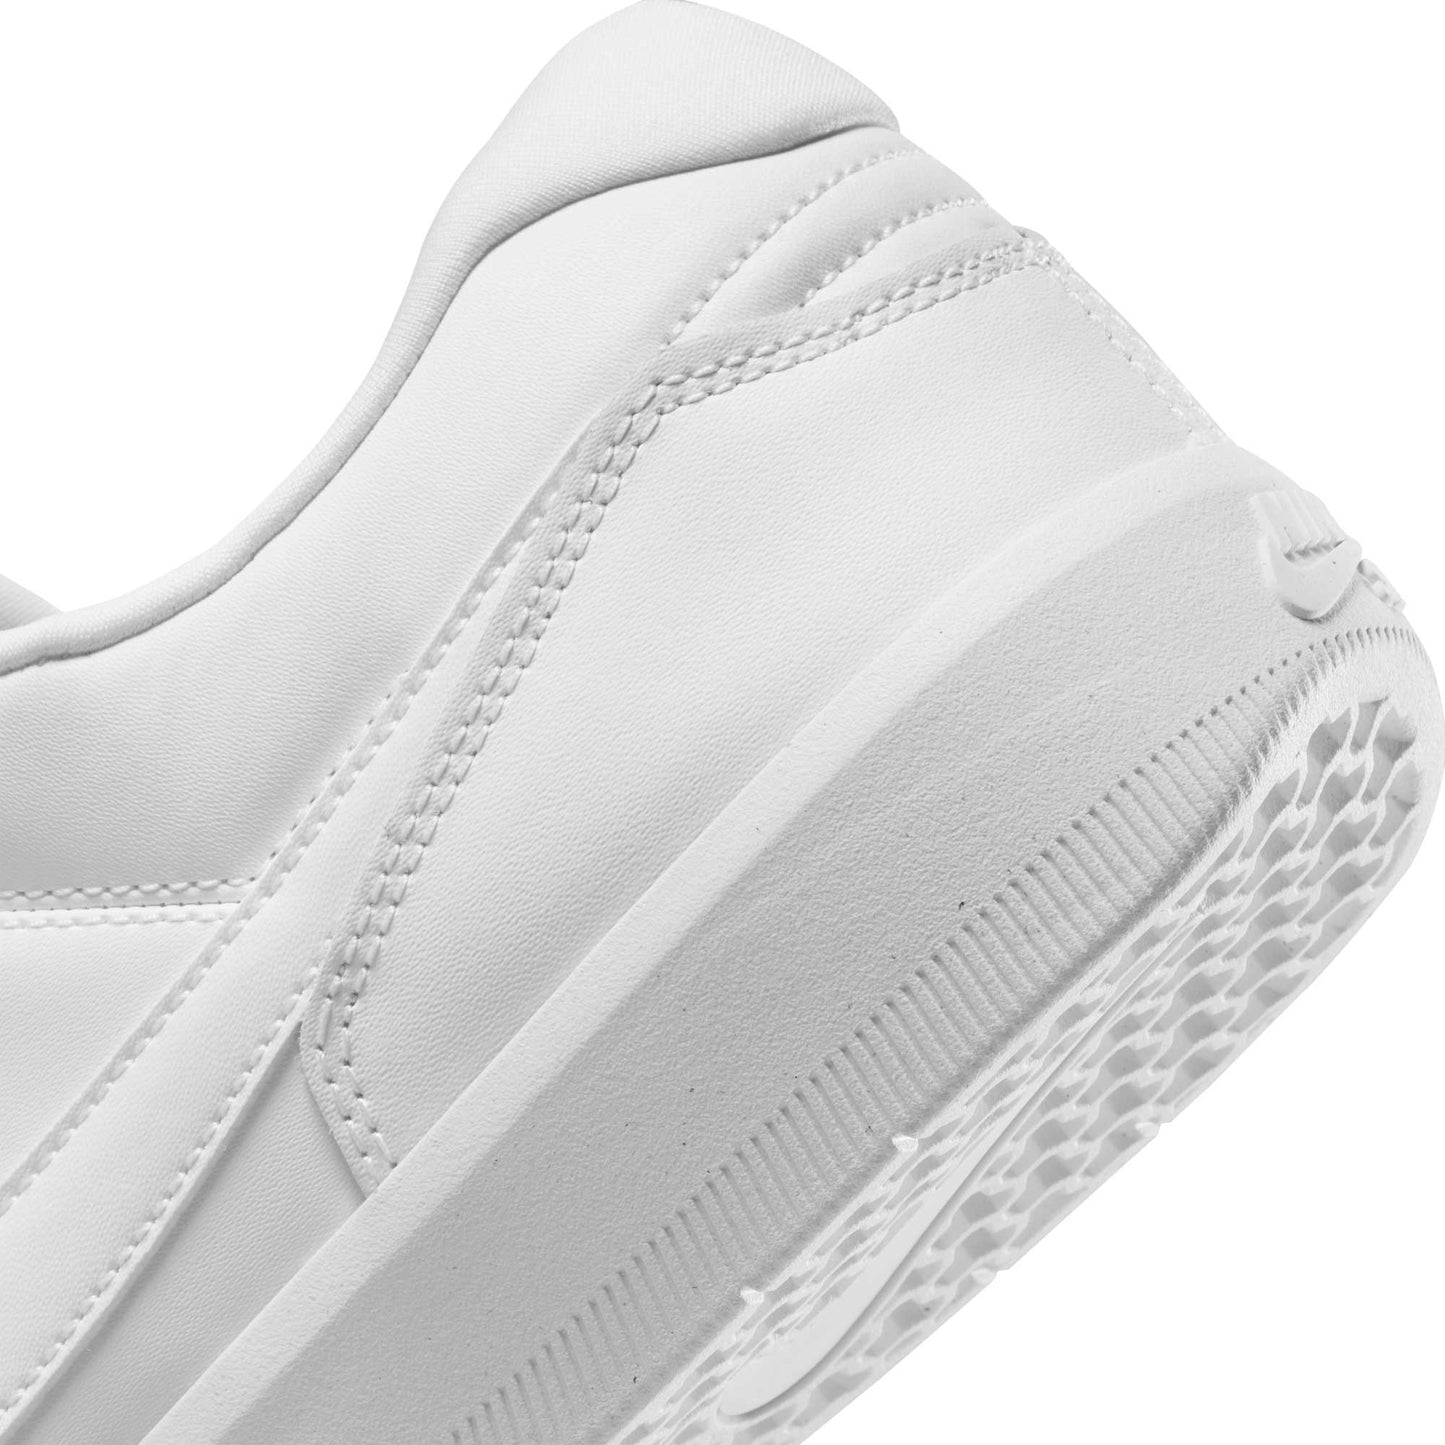 Nike SB Force 58 Premium, white/white-white-white - Tiki Room Skateboards - 10